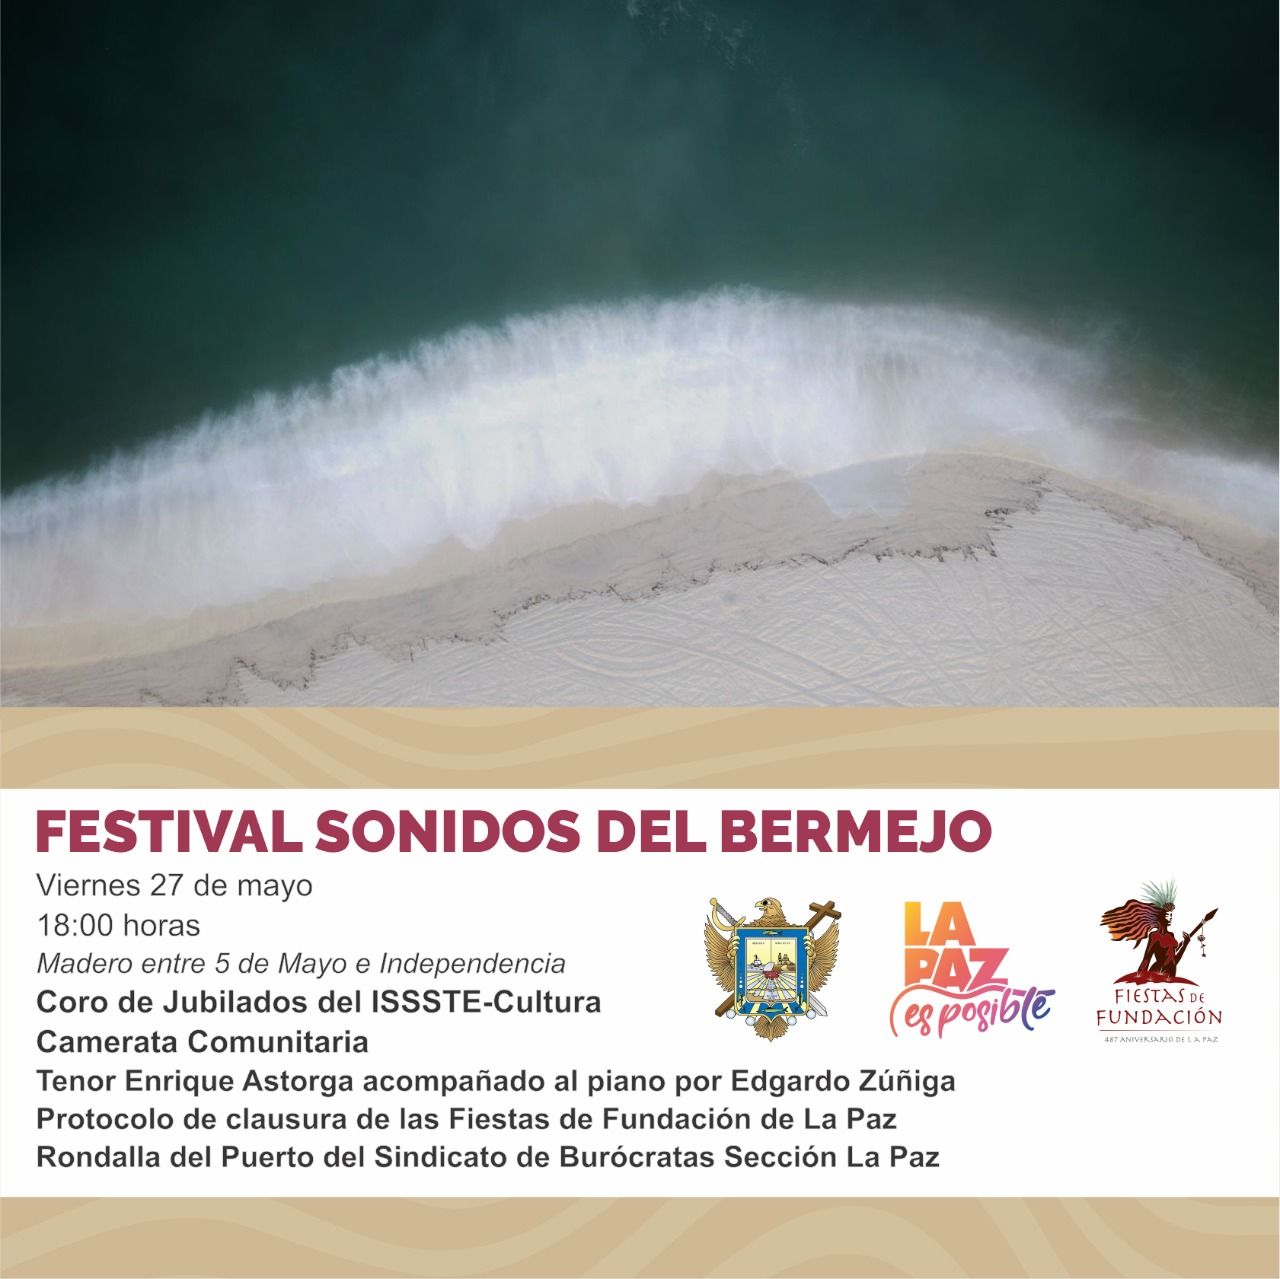 Invitan al Festival Sonidos del Bermejo en La Paz